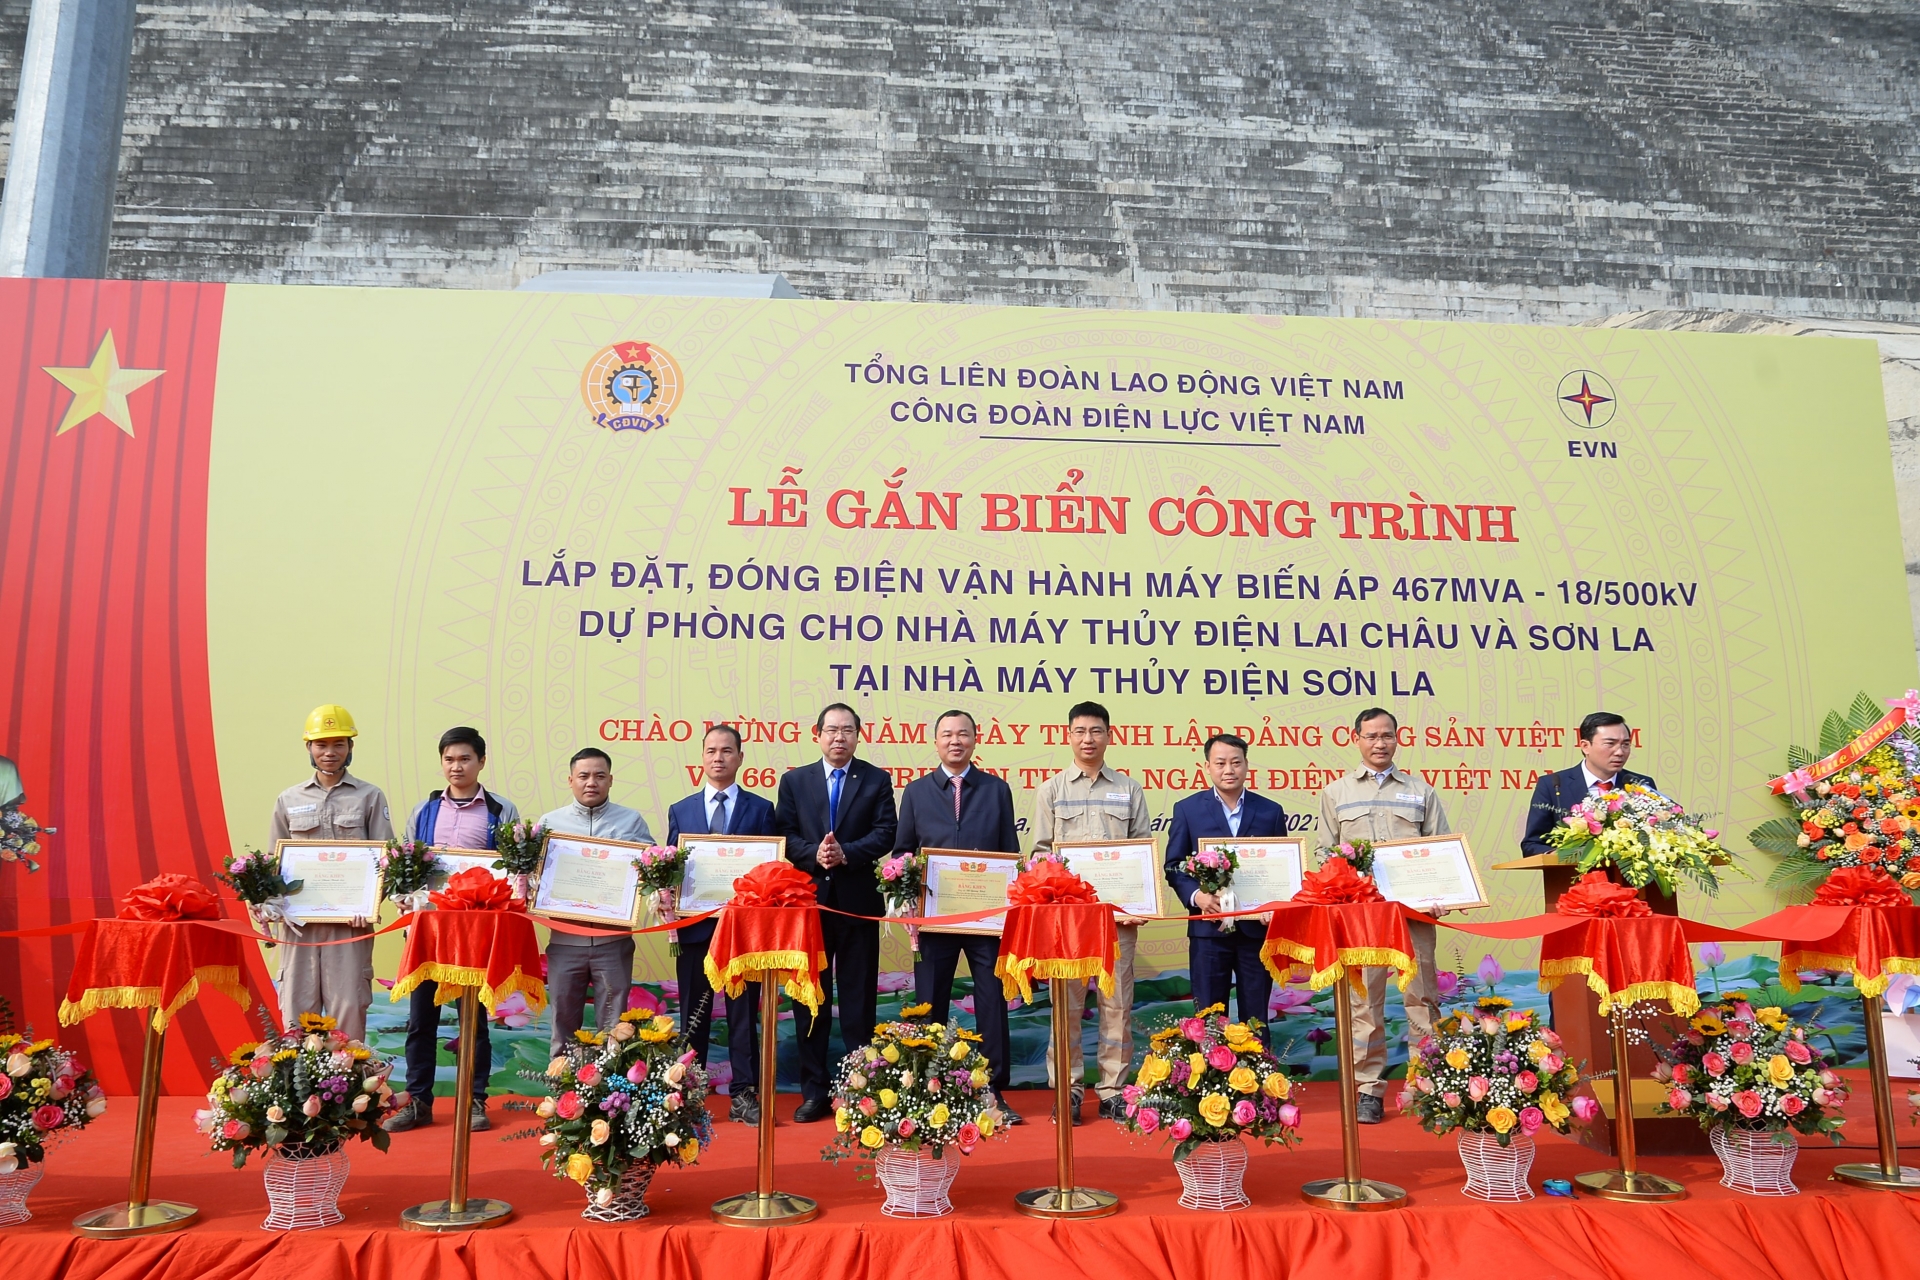 Công trình mang thương hiệu “made in Việt Nam” mừng Đại hội Đảng toàn quốc lần thứ XIII